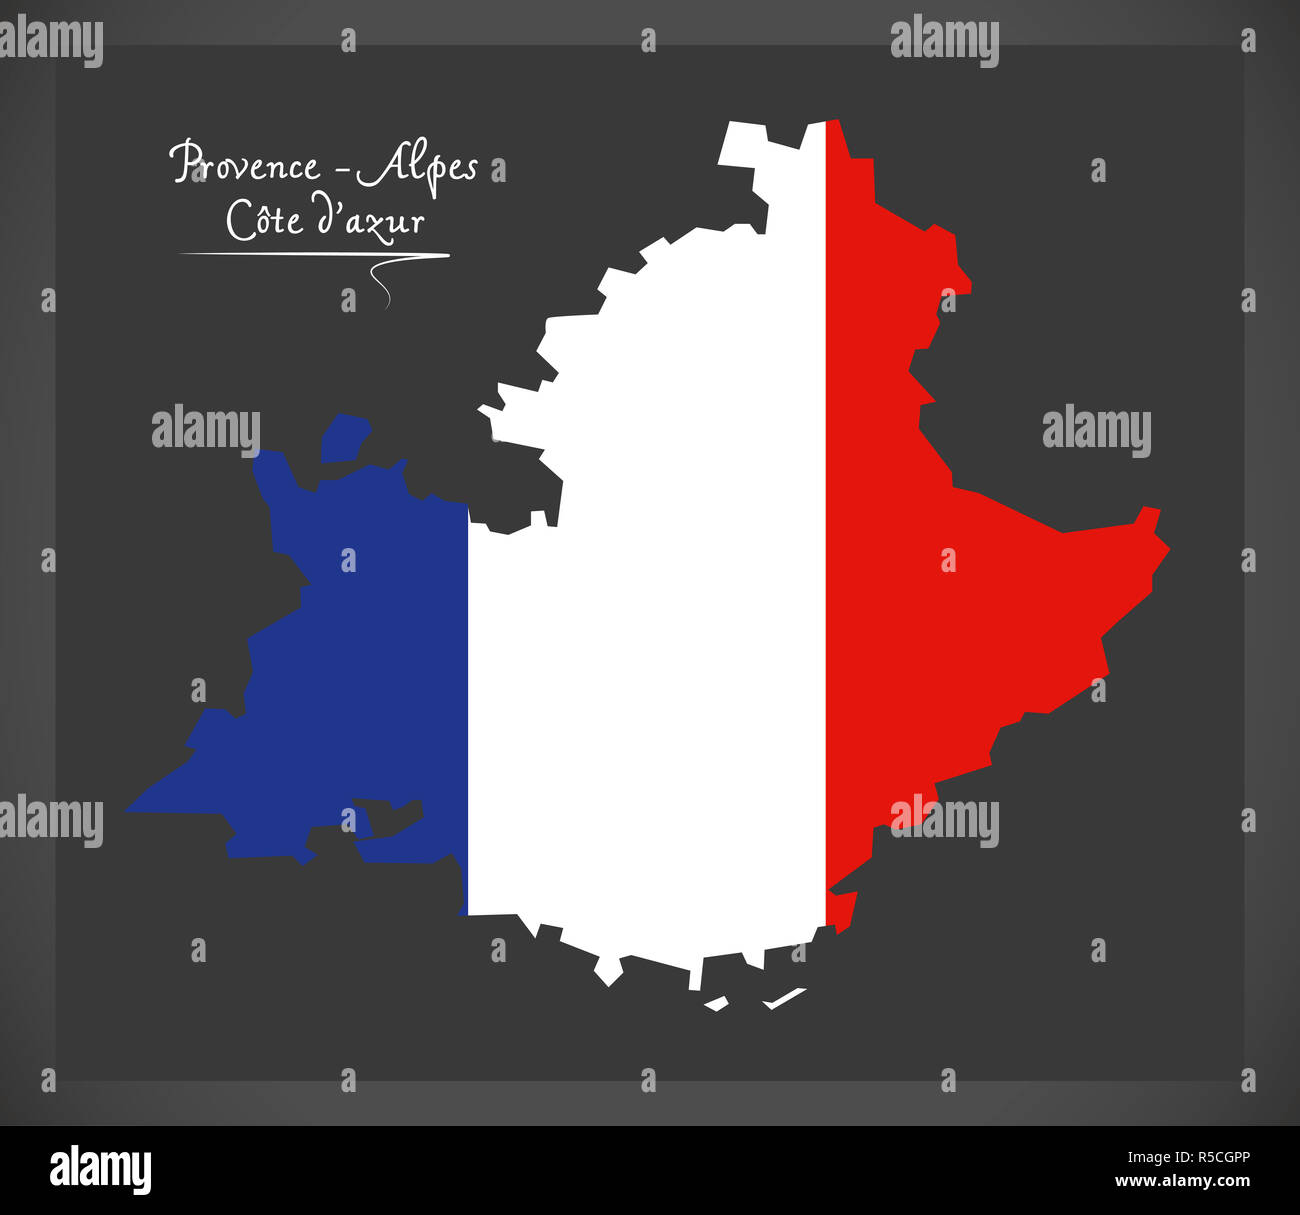 - Provence Alpes Cote d'azur carte avec illustration du drapeau national français Banque D'Images